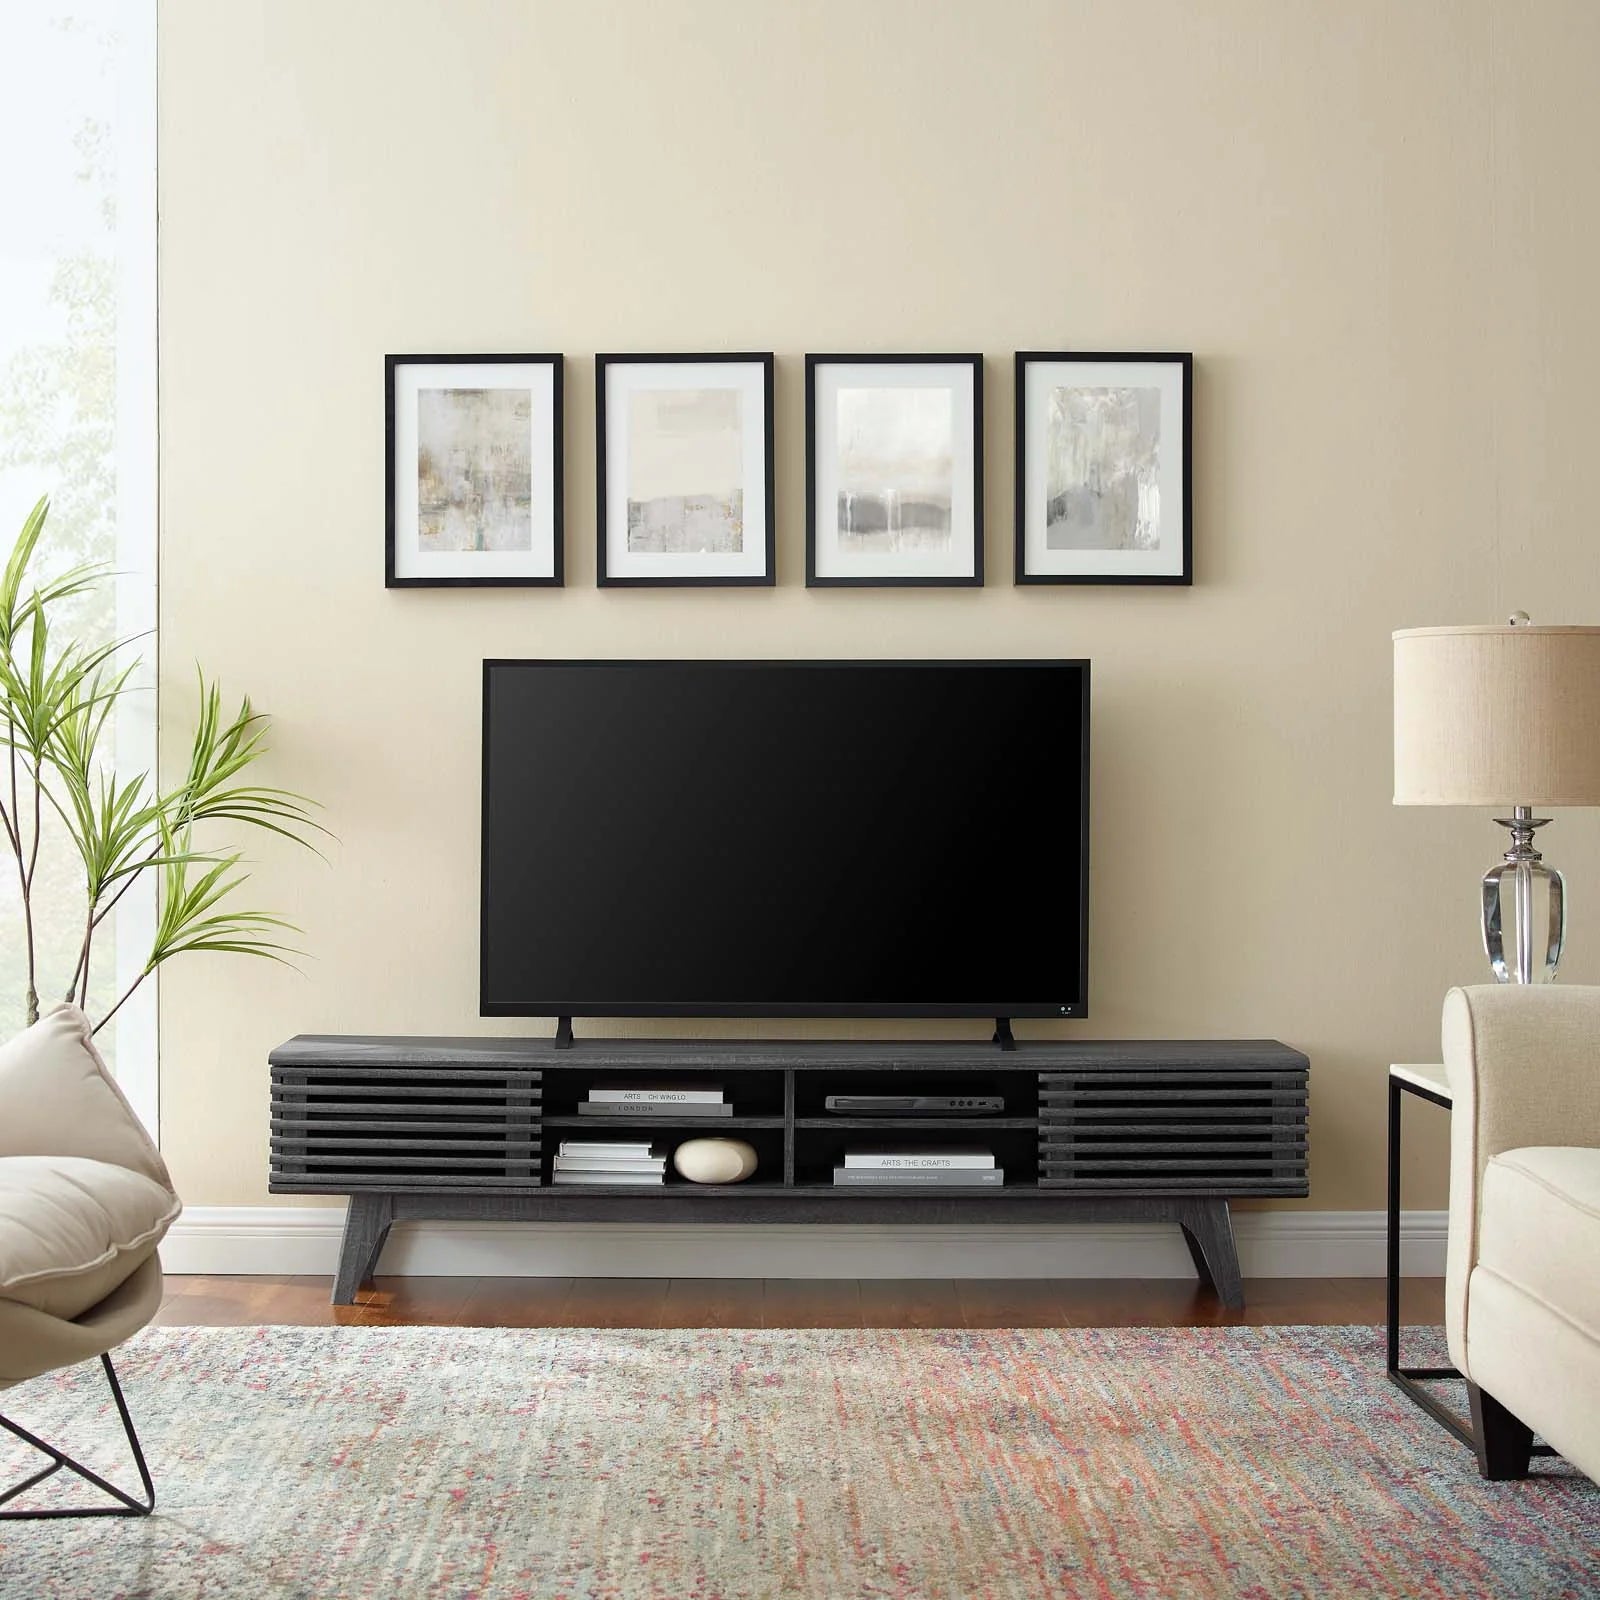 Mueble multimedia de 70” para TV Niklas color negro en una sala.